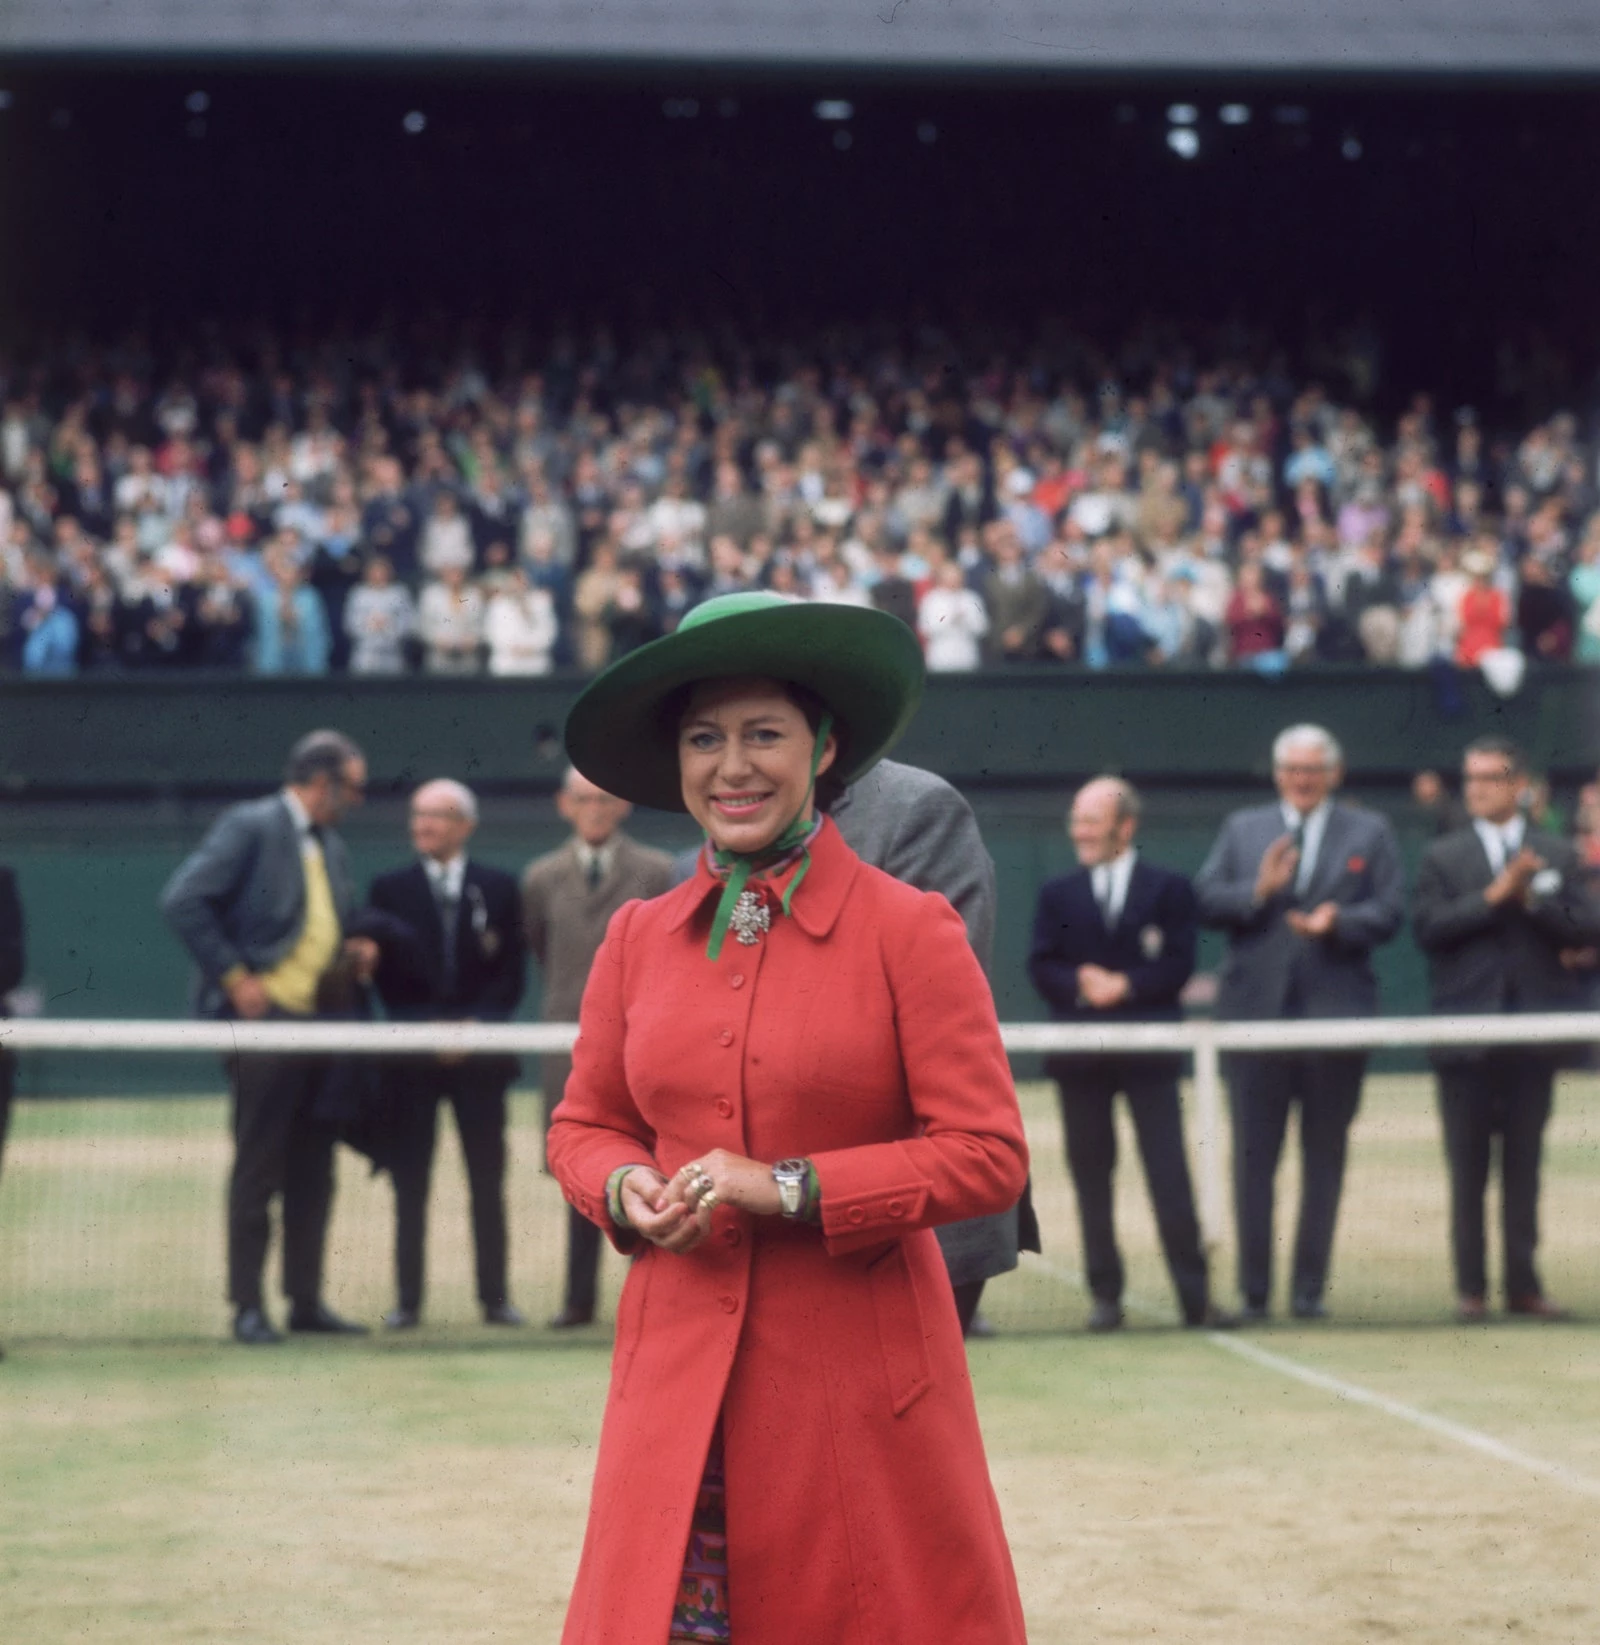 У 1970 році принцеса Маргарет вручала трофей переможцю. Сестра королеви була одягнена в червоне пальто з коміром, сукню з принтом і капелюх із широкими полями смарагдово-зеленого кольору. Її образ доповнювала велика брошка, прикріплена на шиї.